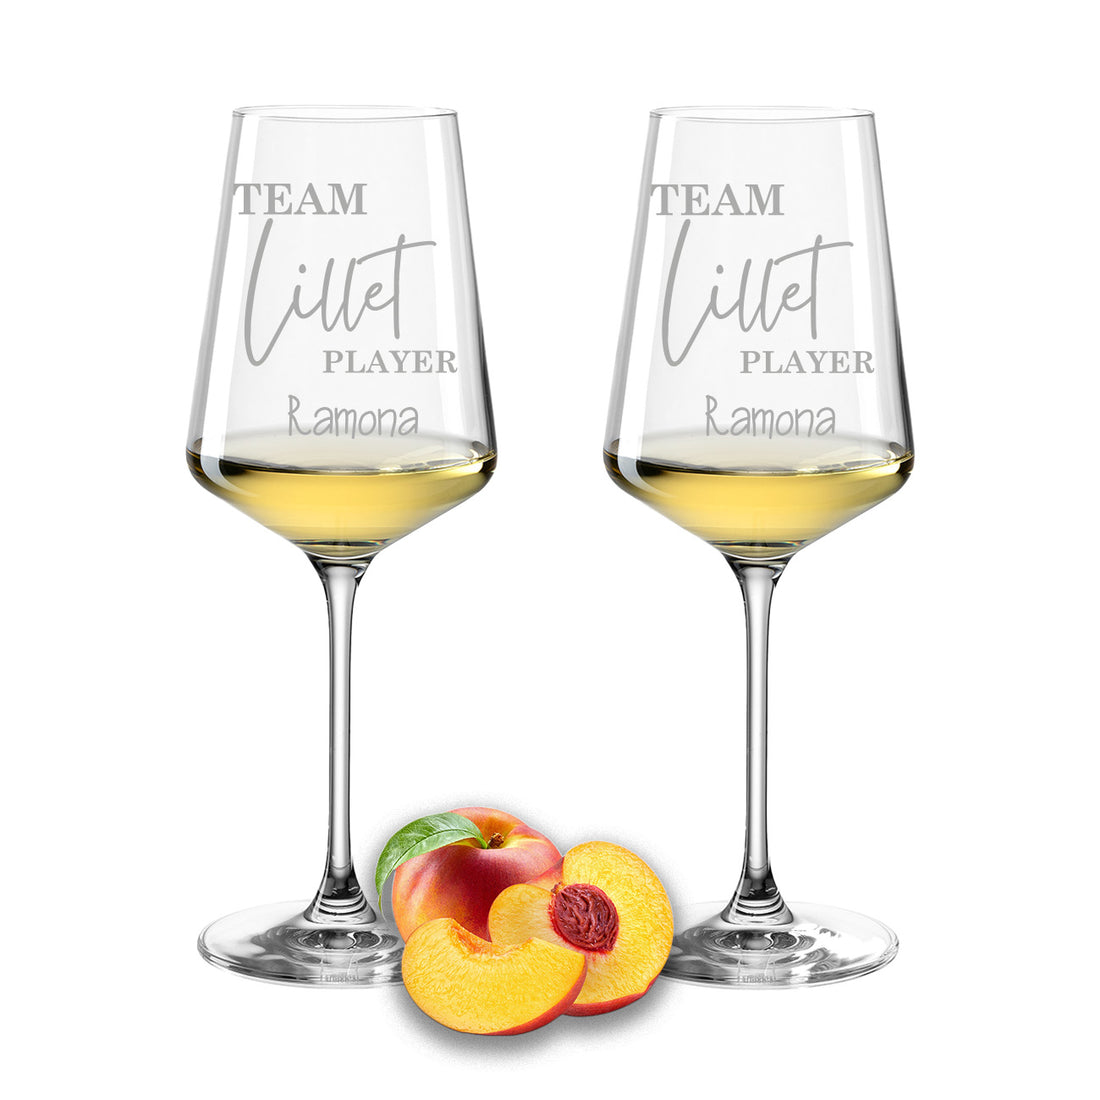 Weinglas mit Gravur Leonardo Puccini "TEAM LILLET PLAYER" 2 Gläser mit Wunschname